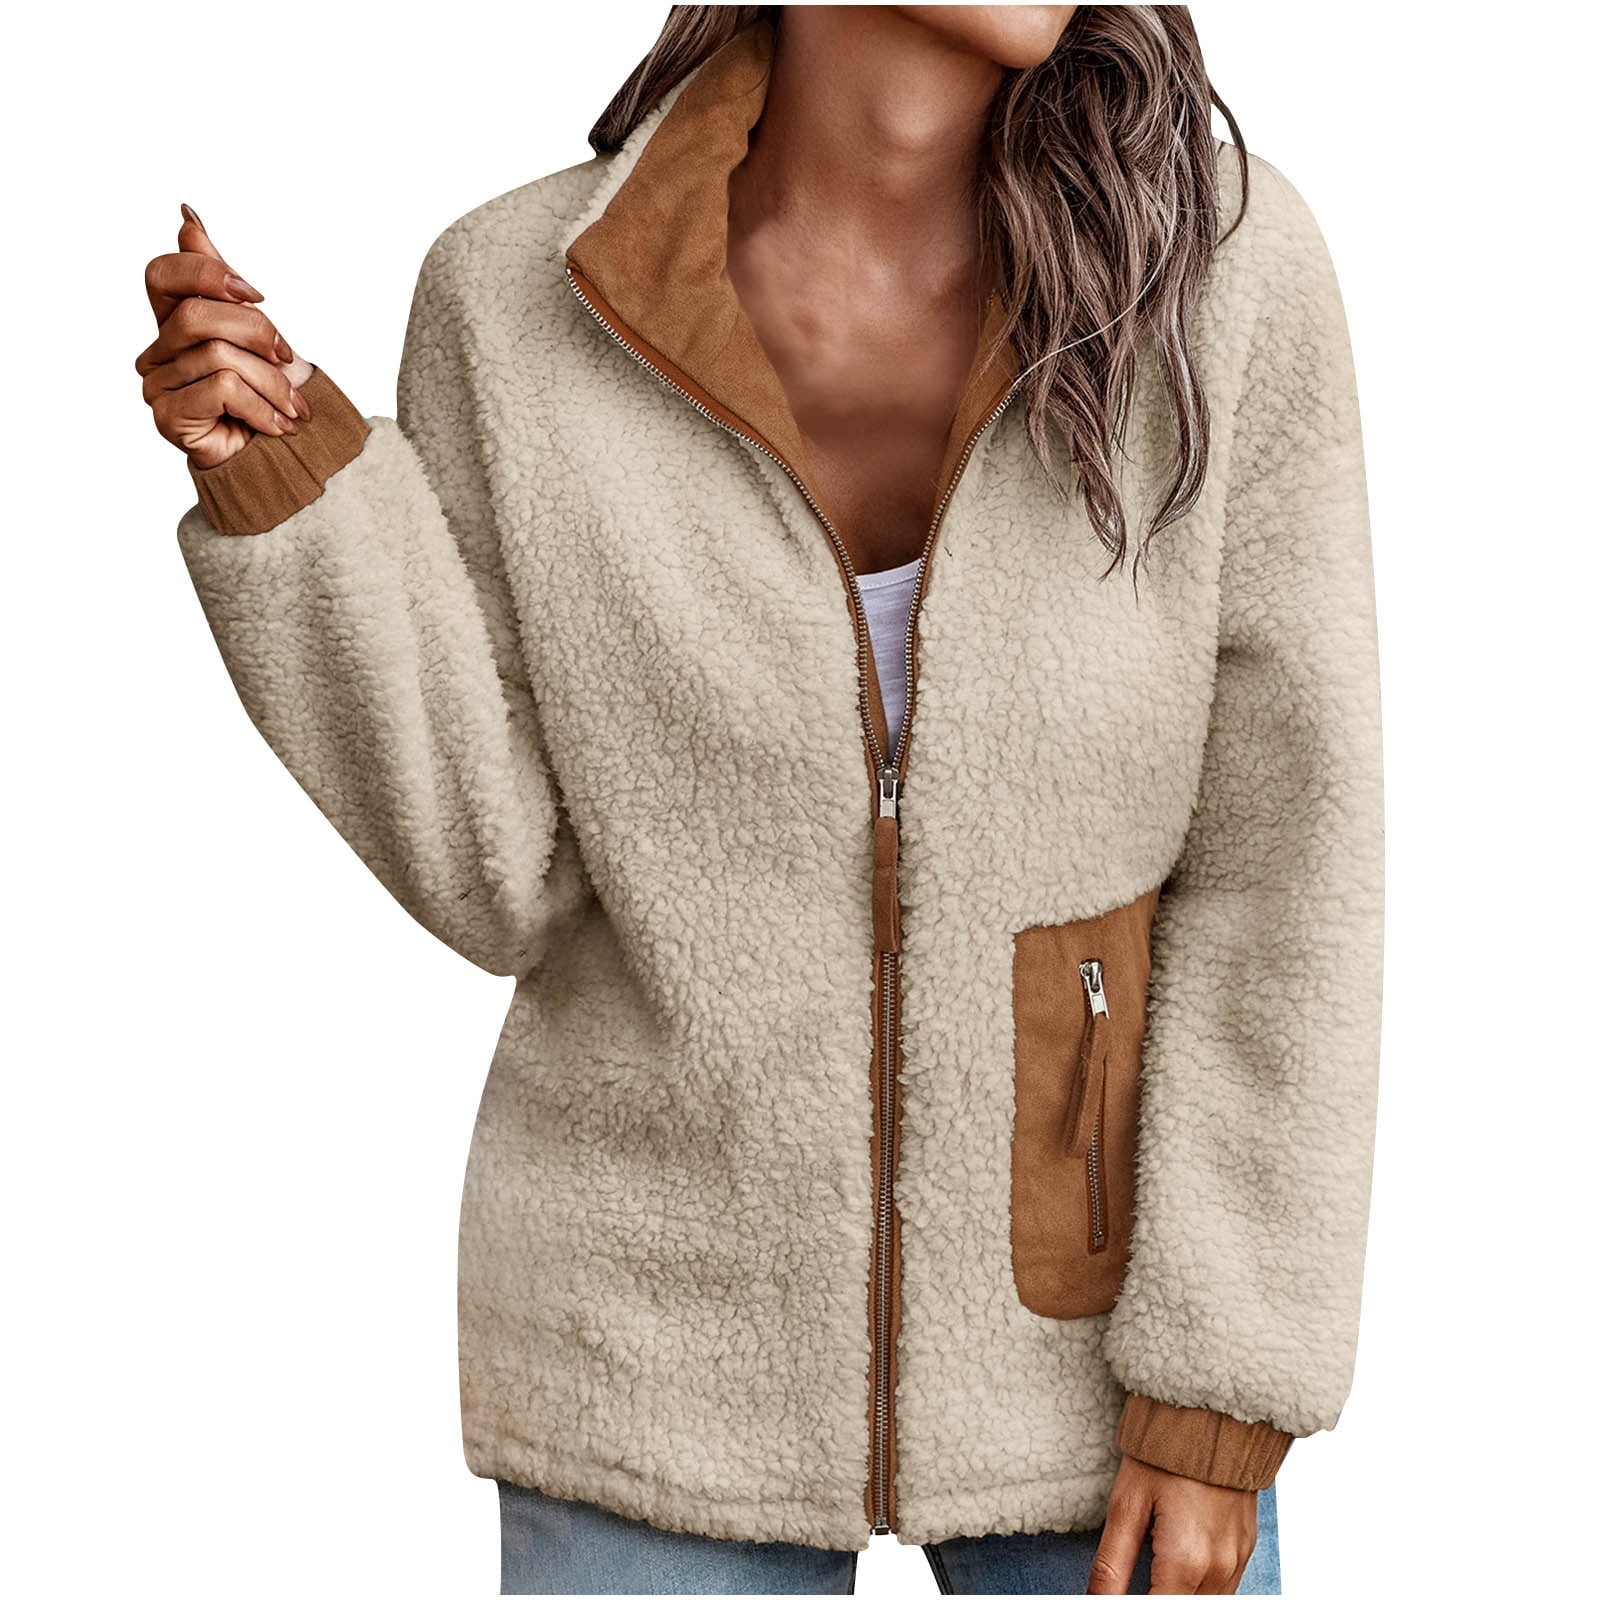 Stylish Women's Sherpa Fleece Jacket Faux Fuzzy Long Sleeve Casual Zip Up  Bomber Jackets Coat Outwear with Zip Pocket